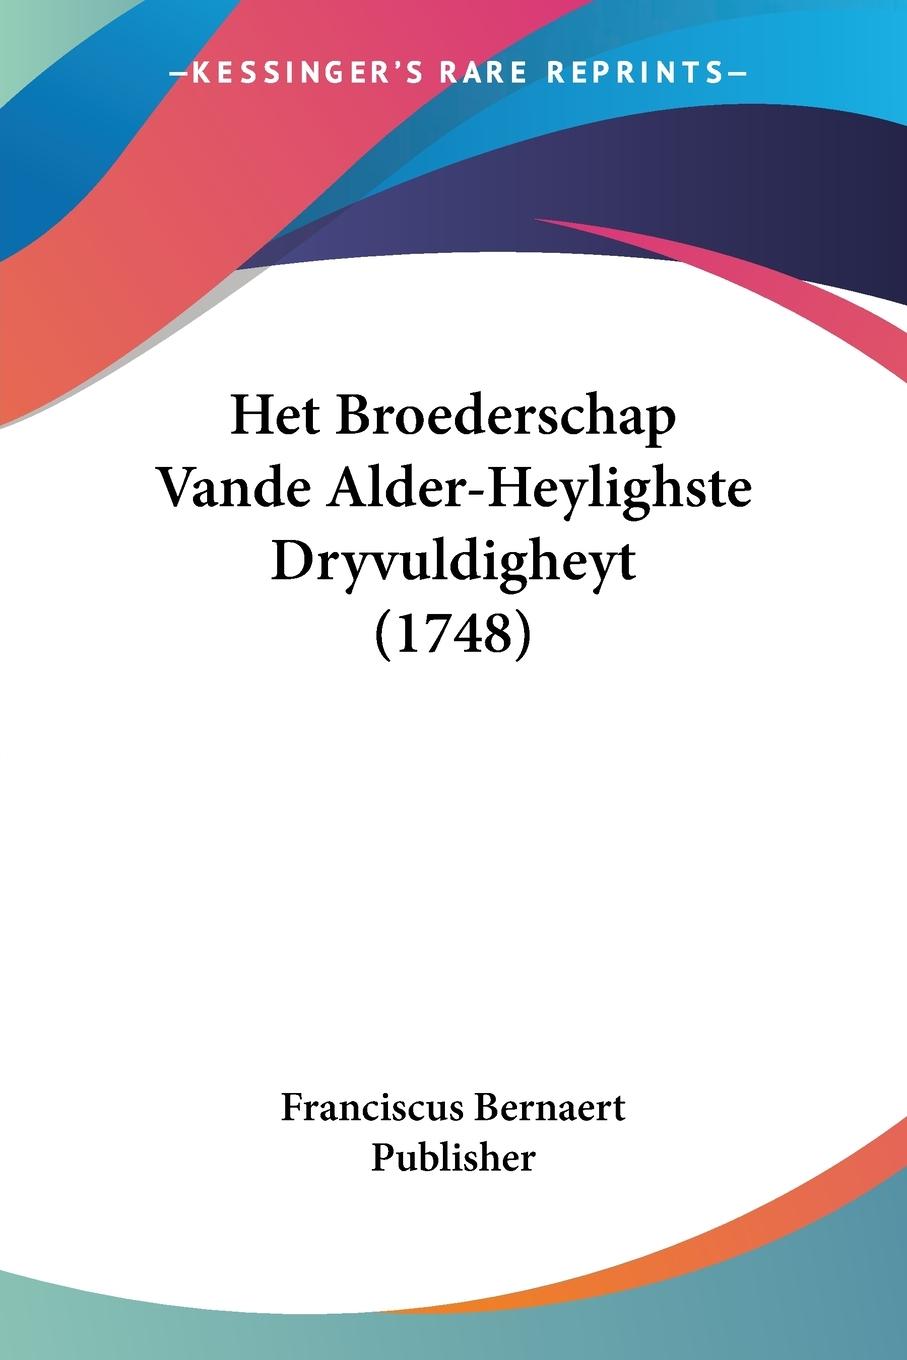 Het Broederschap Vande Alder-Heylighste Dryvuldigheyt (1748) - Franciscus Bernaert Publisher